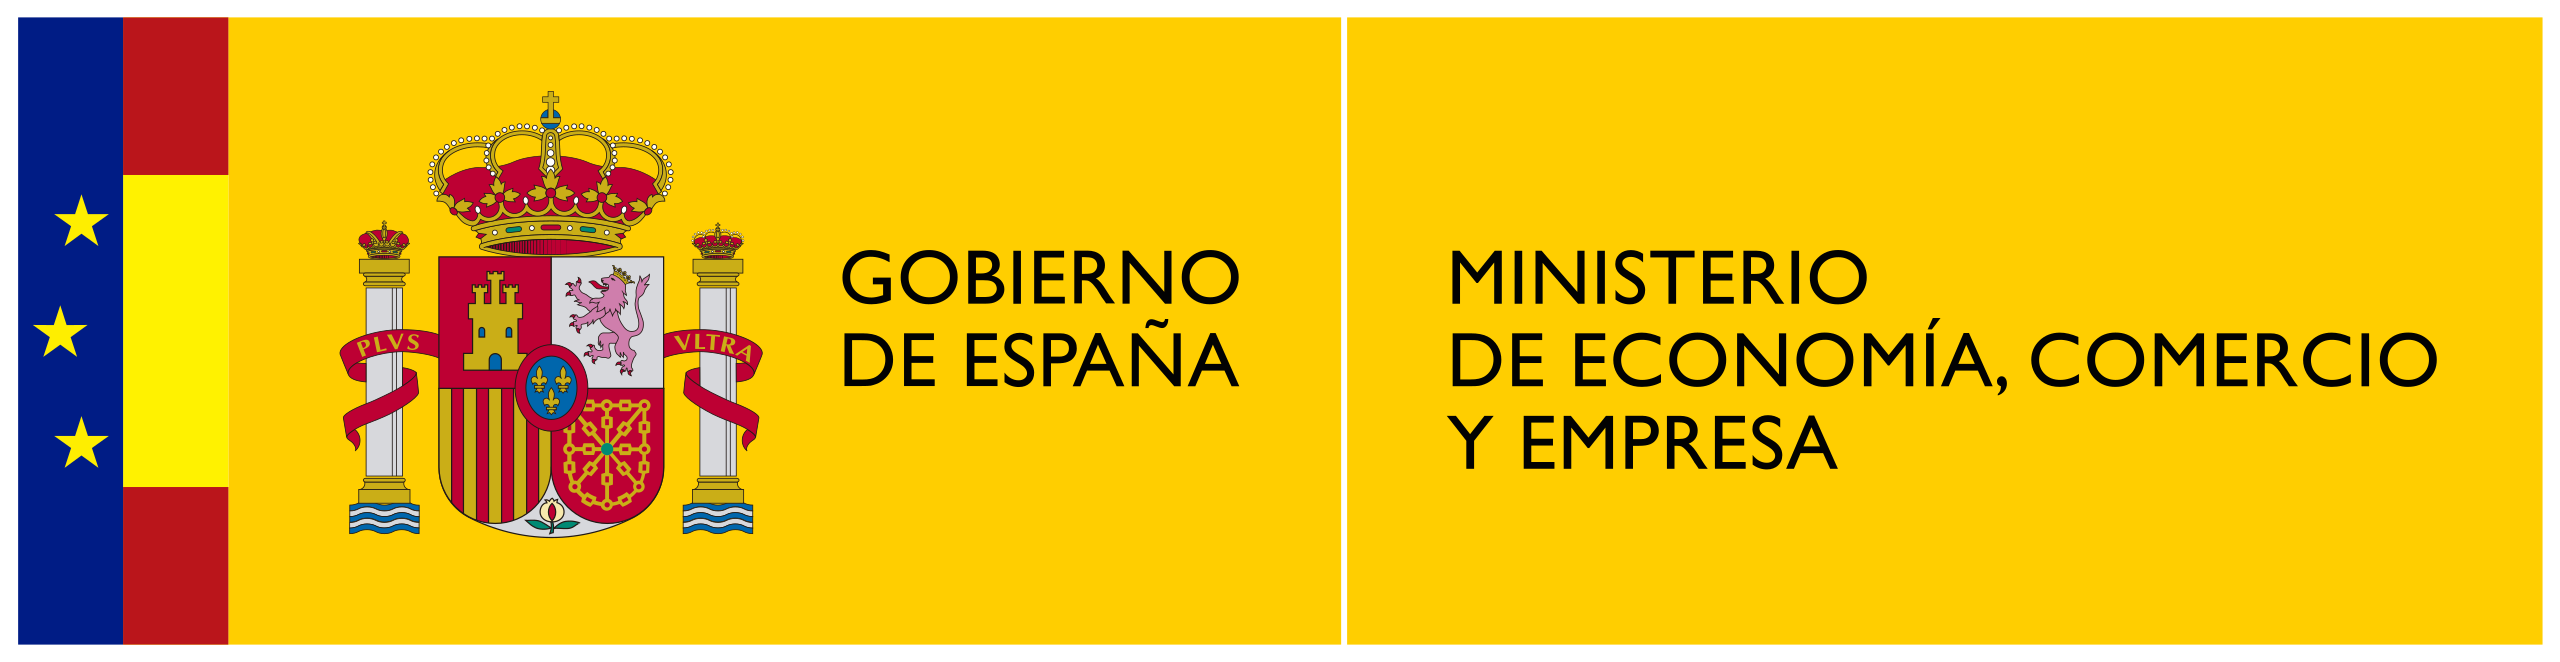 Logotipo_del_Ministerio_de_Economía,_Comercio_y_Empresa.svg